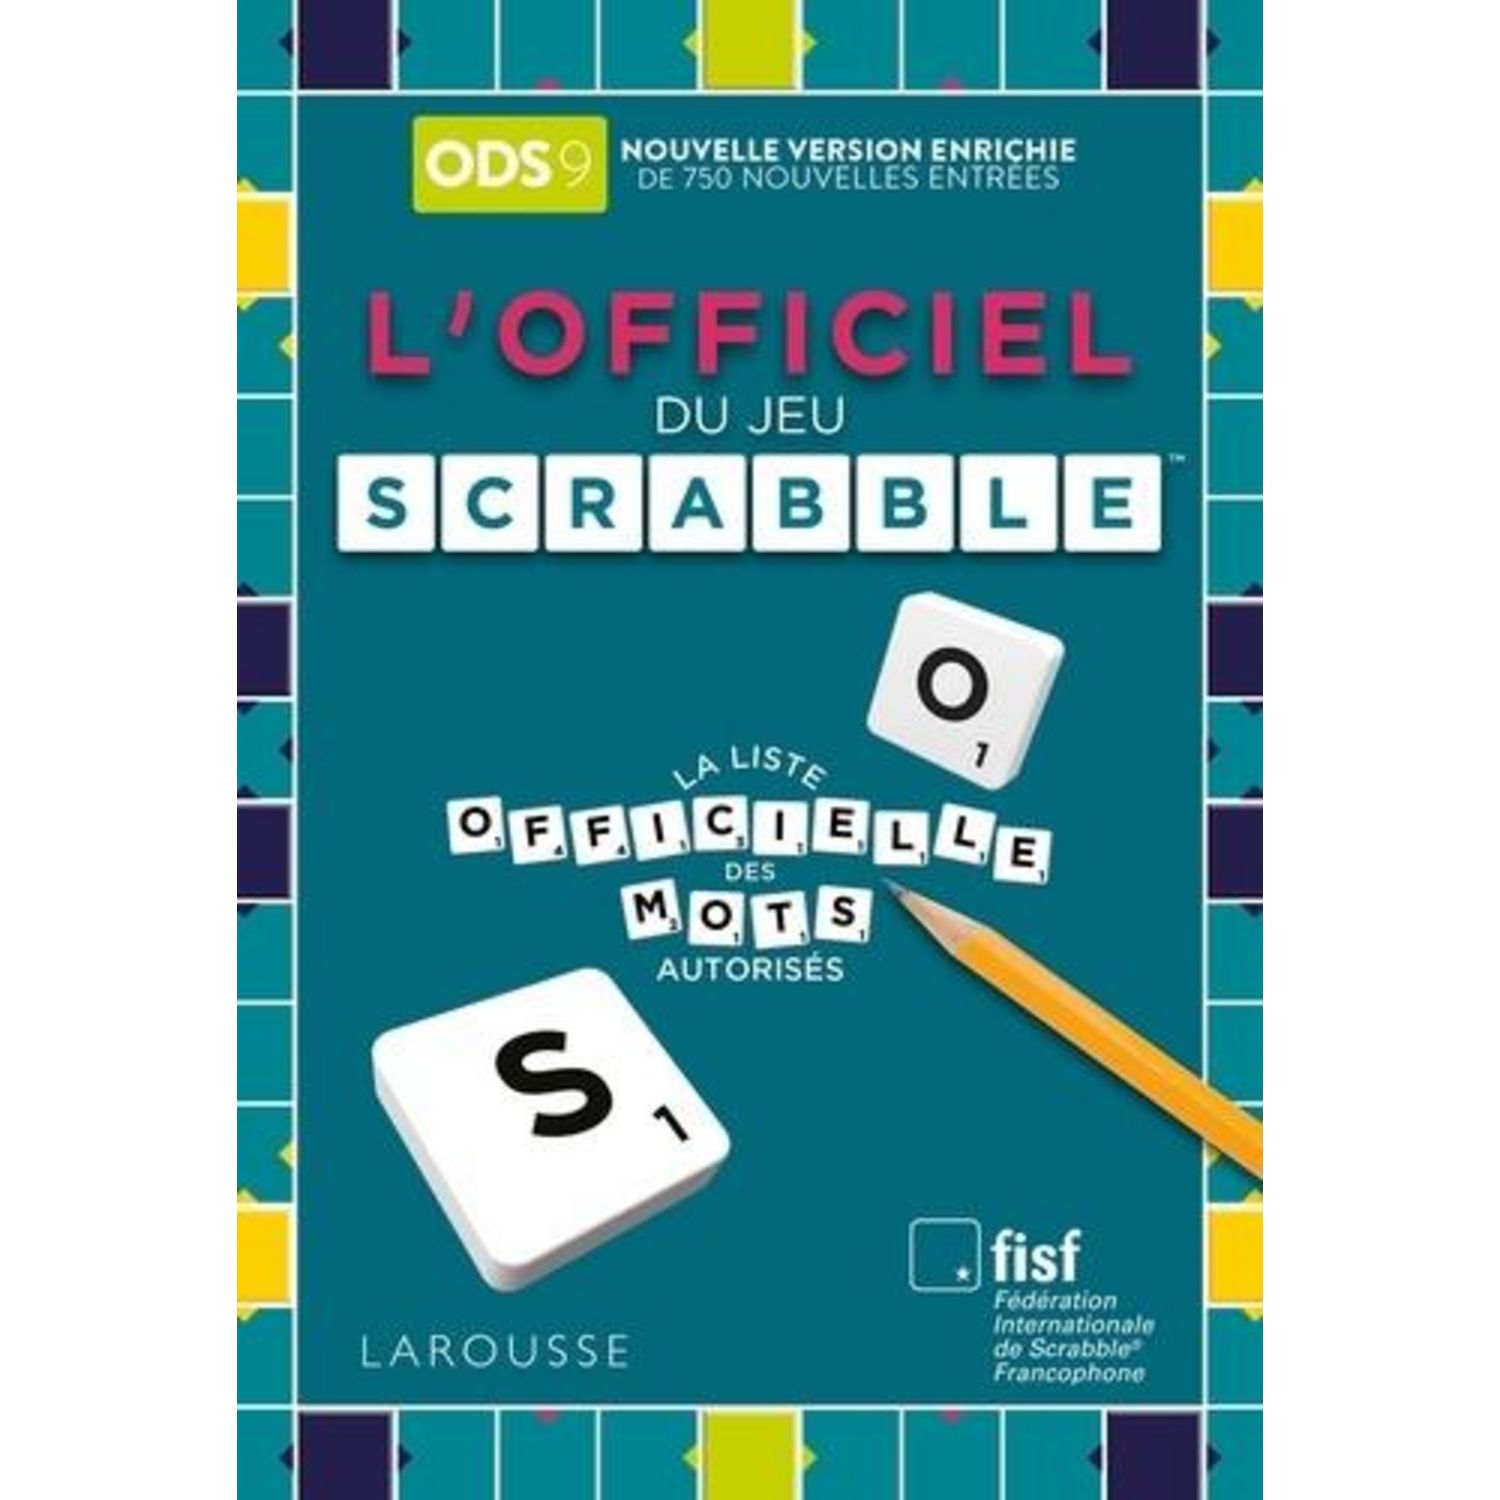 Scrabble : records, scandales, parties dans l'espace Dix faits insolites  sur le jeu culte qui fête ses 75 ans